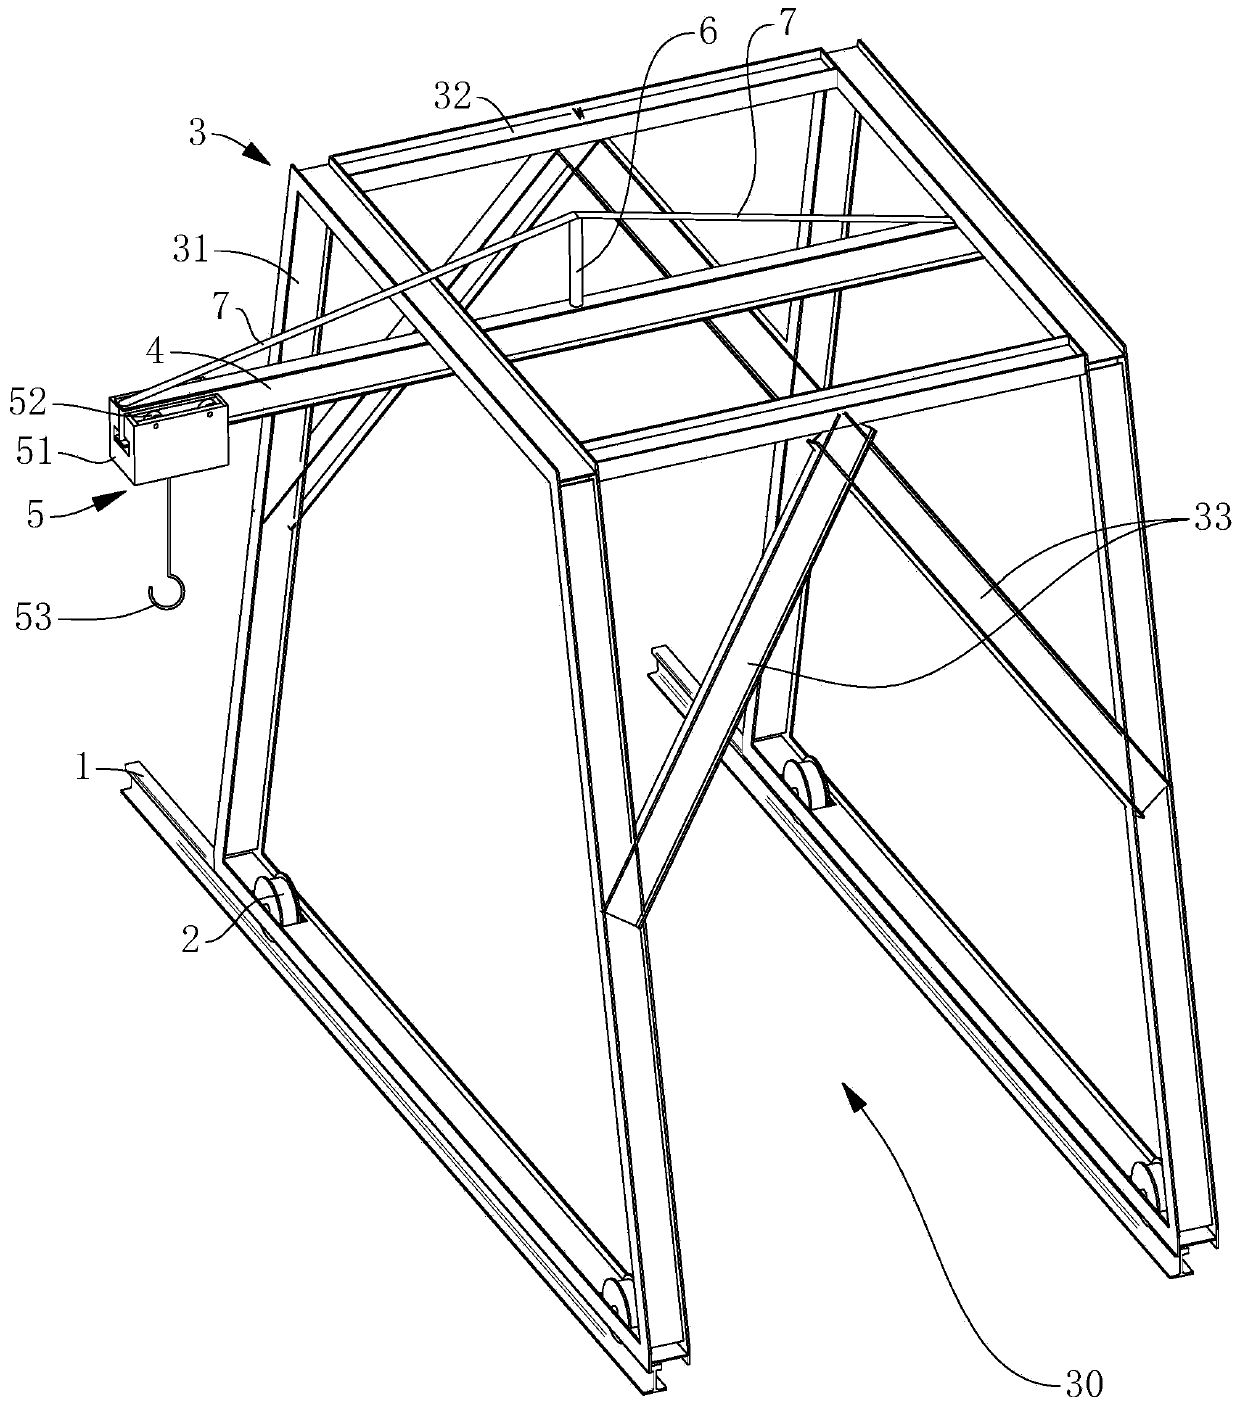 Gantry crane for mounting equipment